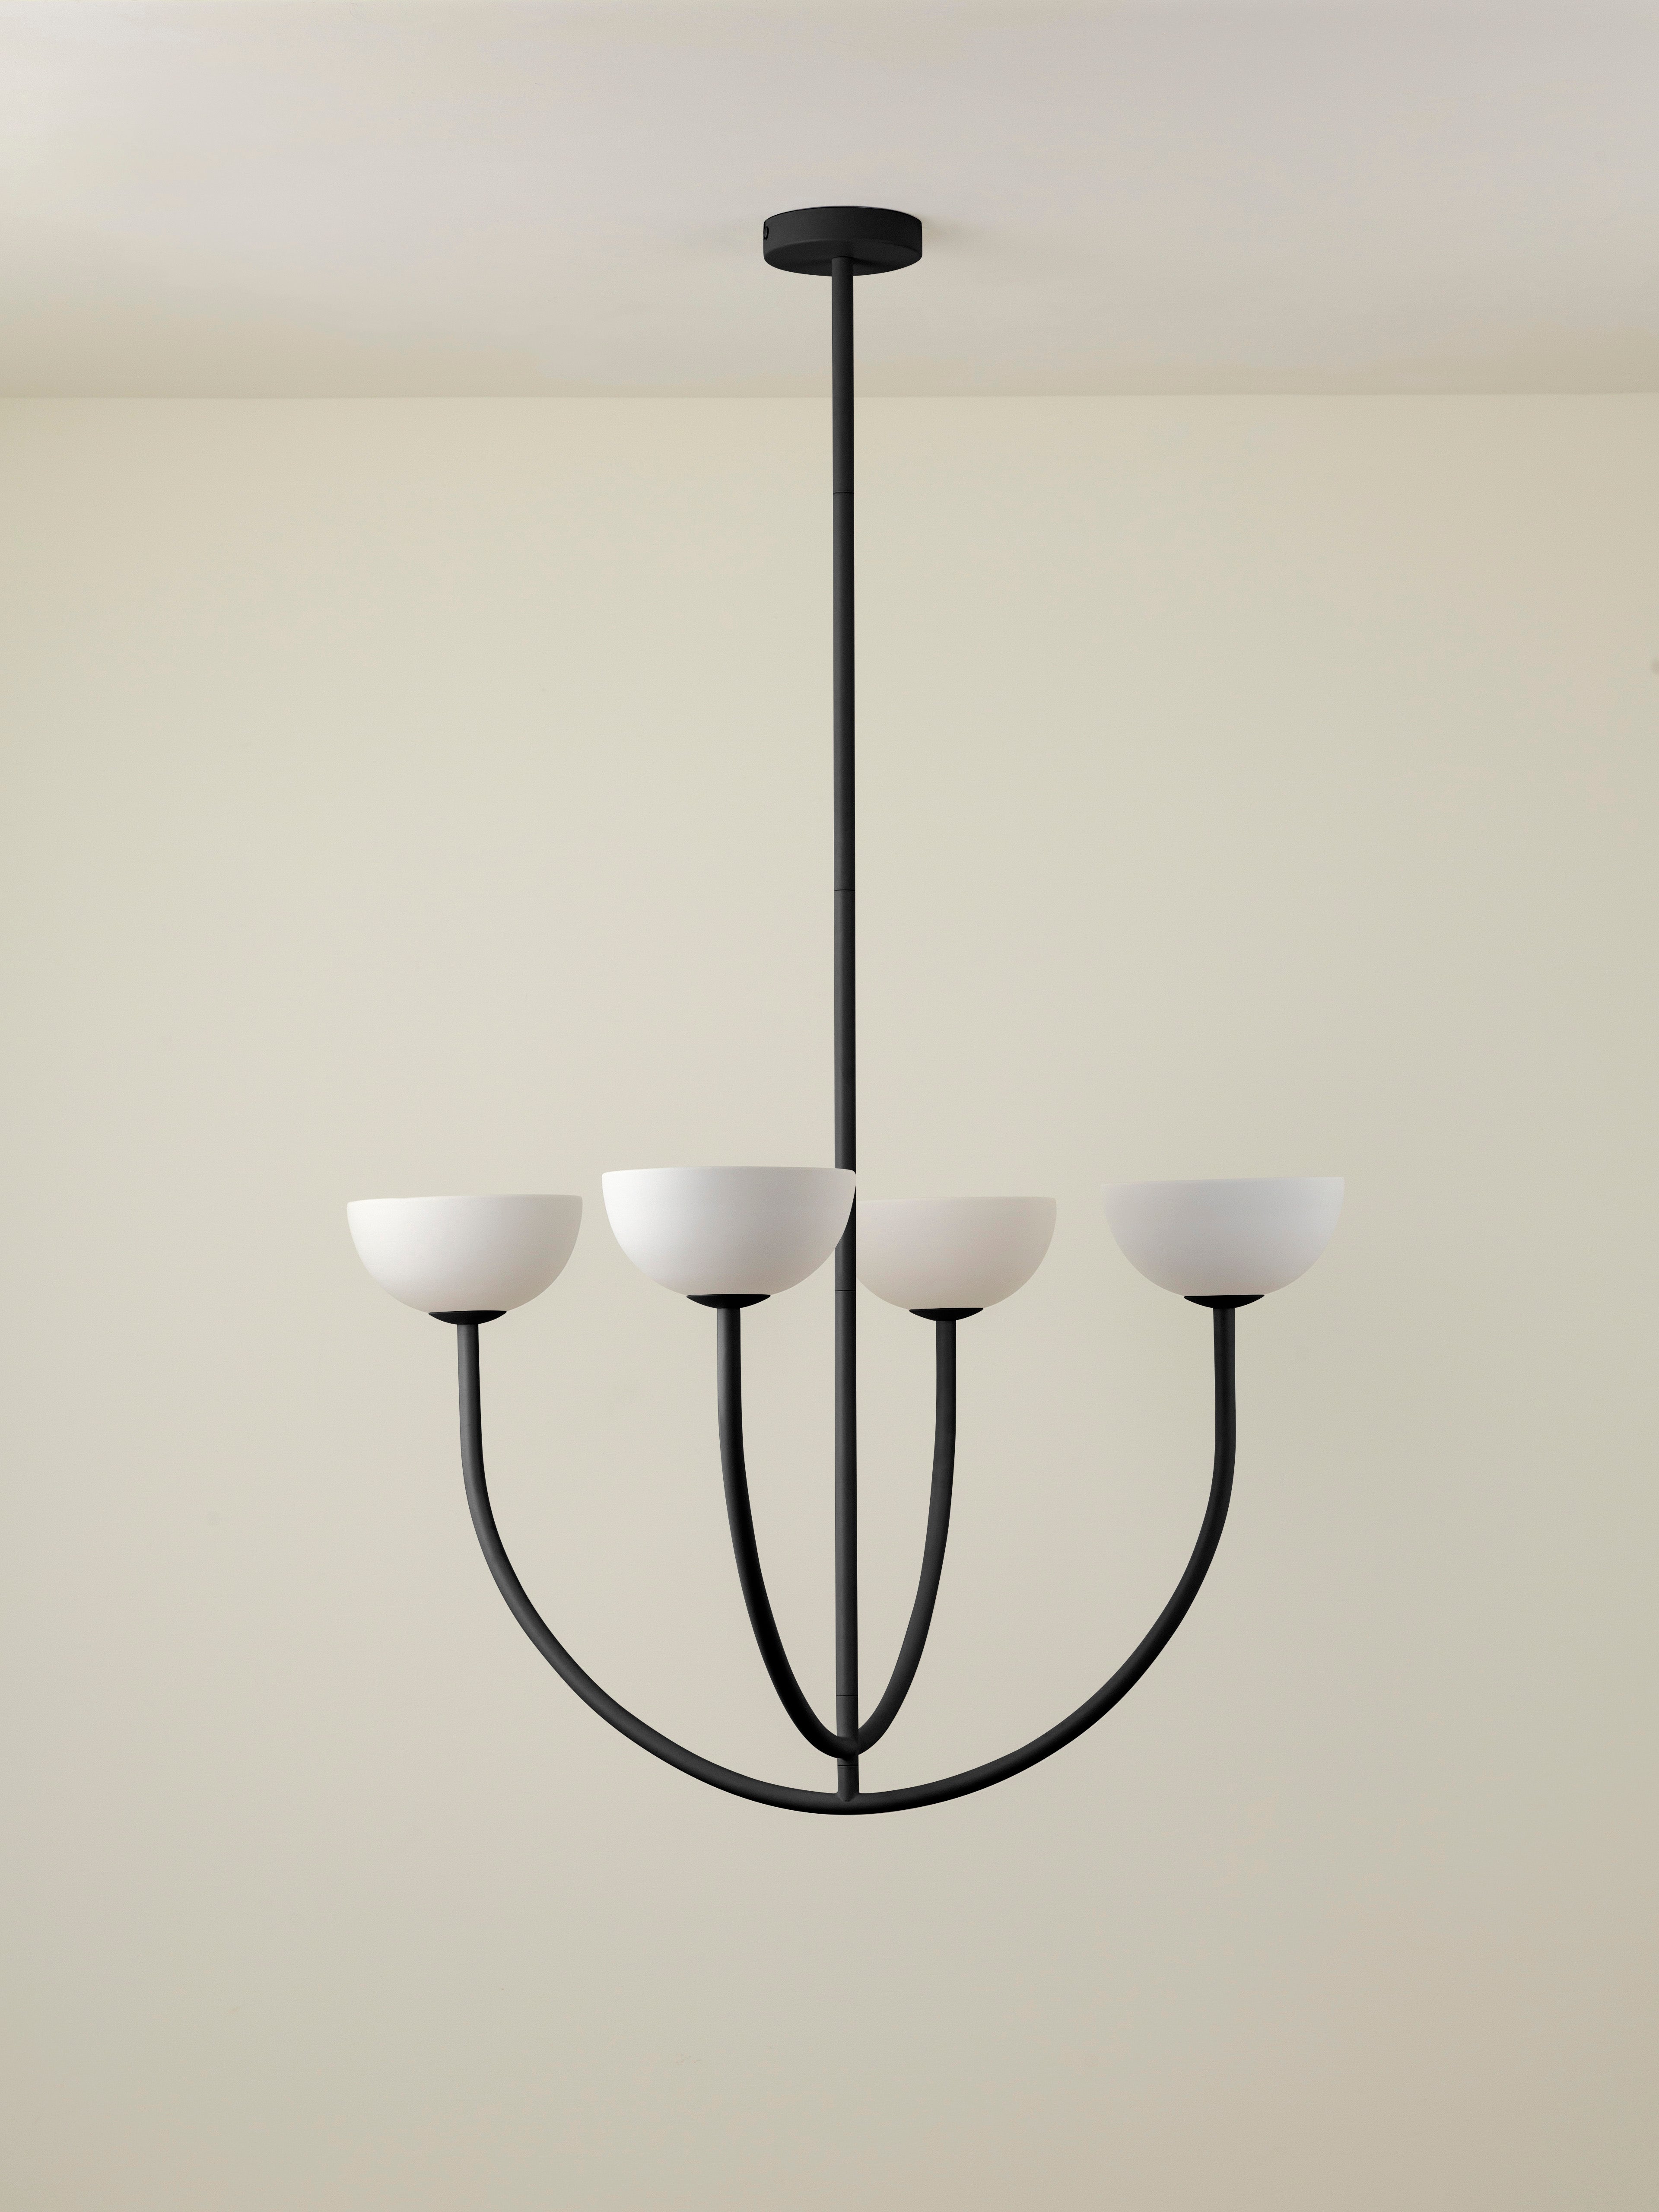 Ruzo - 4 light matt black and white porcelain ceiling pendant | Chandelier | lightsandlamps.com